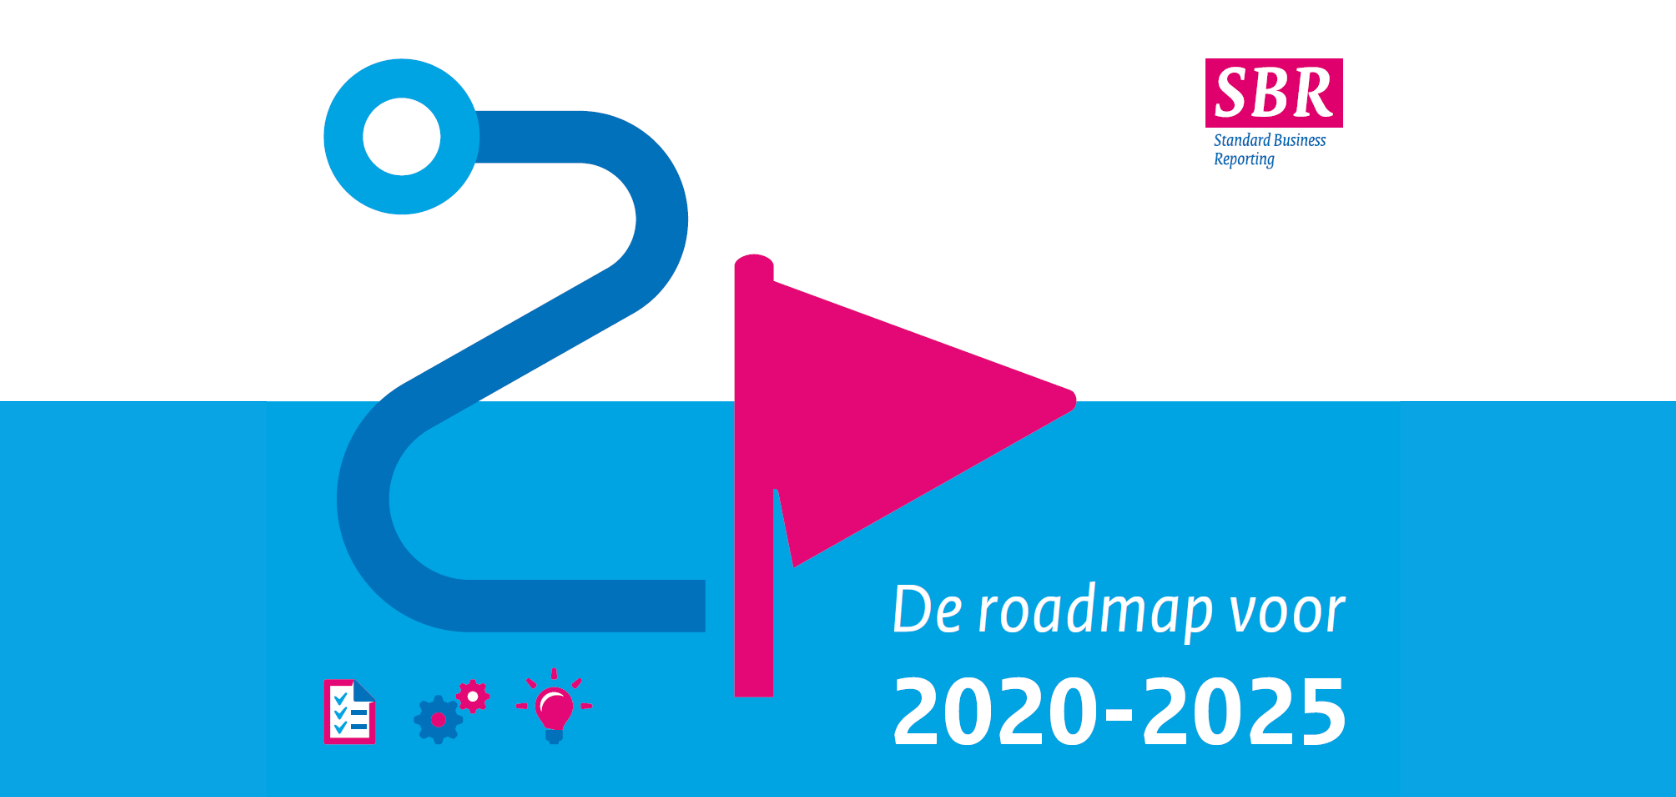 De SBR Roadmap 2020-2025